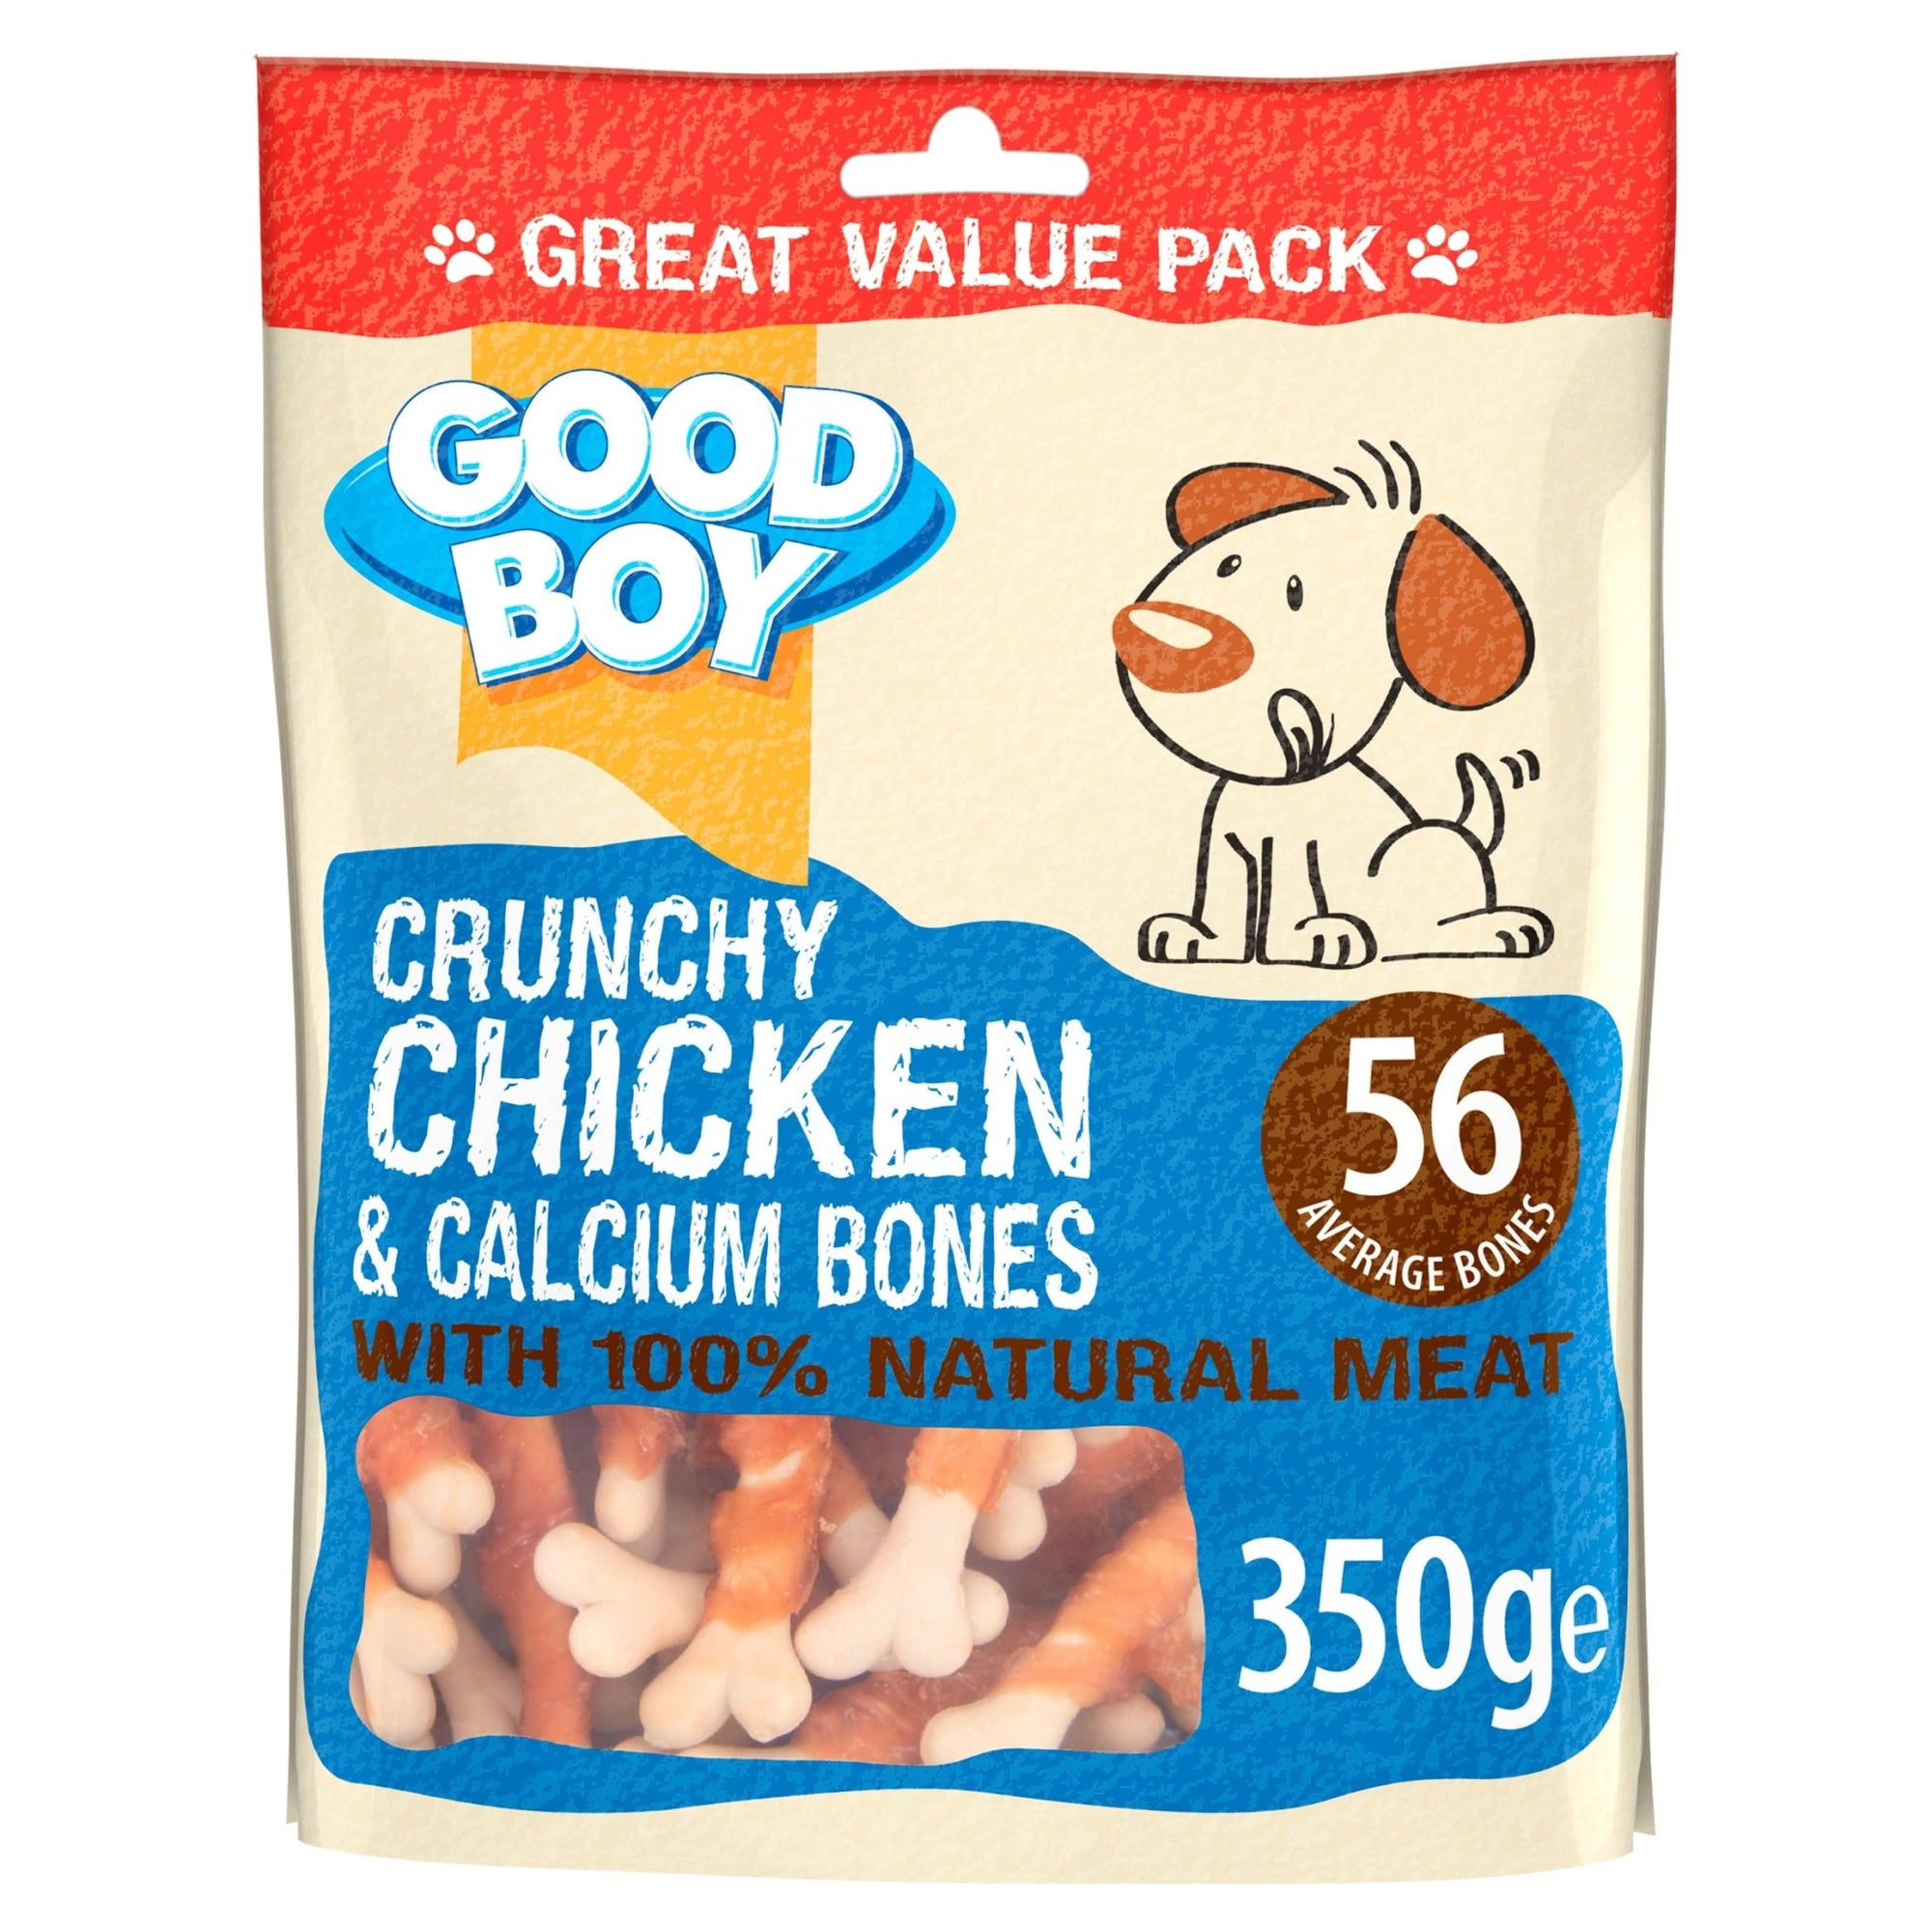 Good Boy Crunchy Chicken & Calcium Bones 3 x 350g, Good Boy,